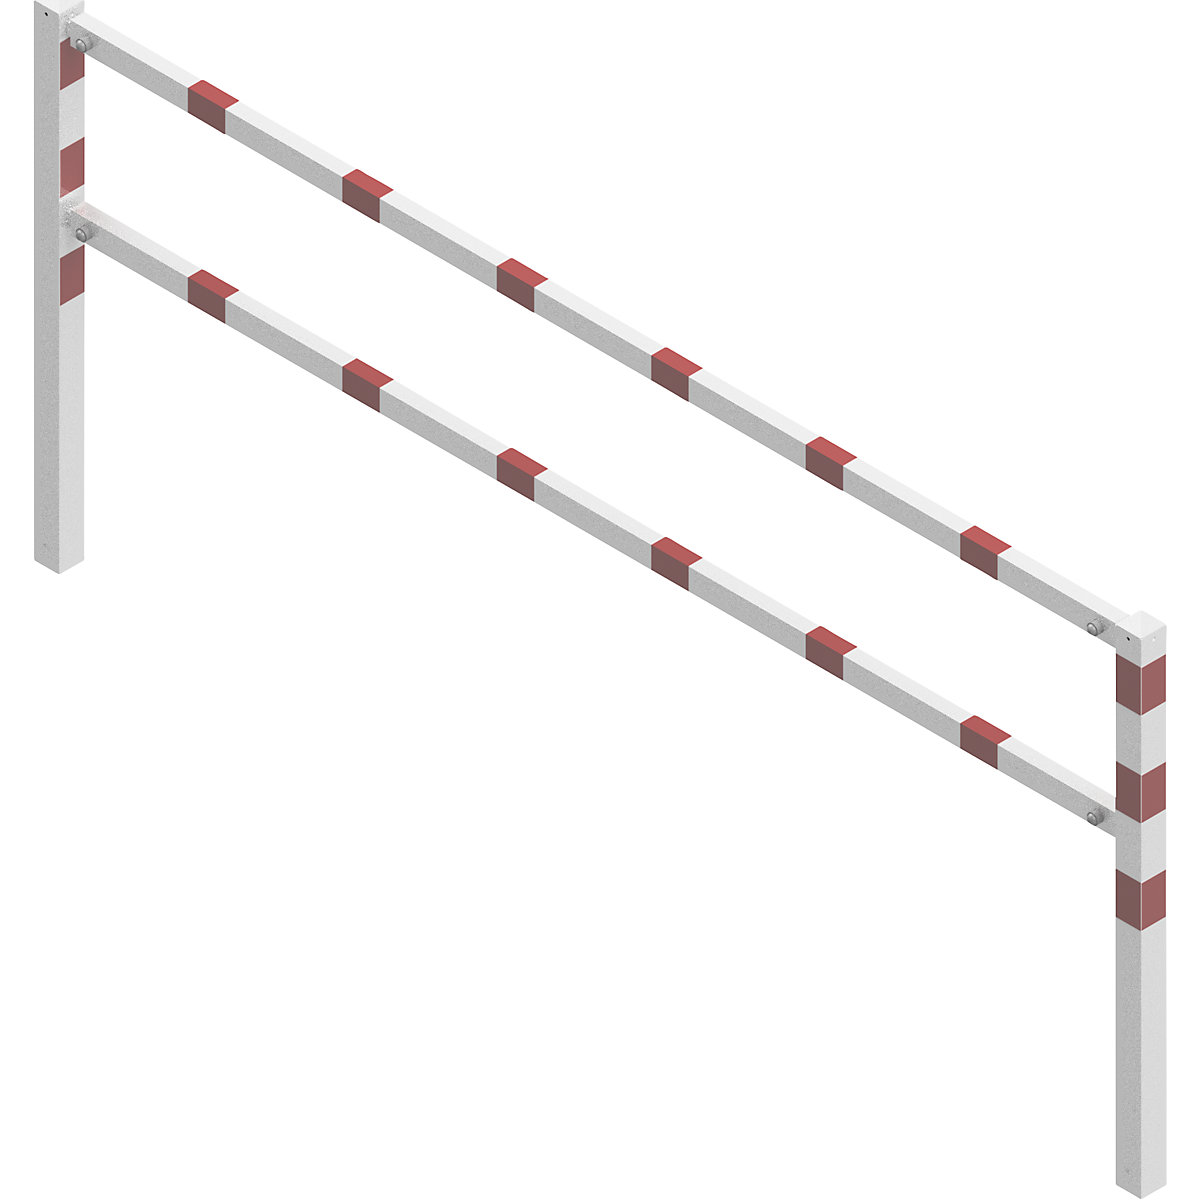 Barrière à visser, avec barre supérieure et au niveau des genoux, blanc avec bandes réfléchissantes rouges, largeur 3000 mm-2